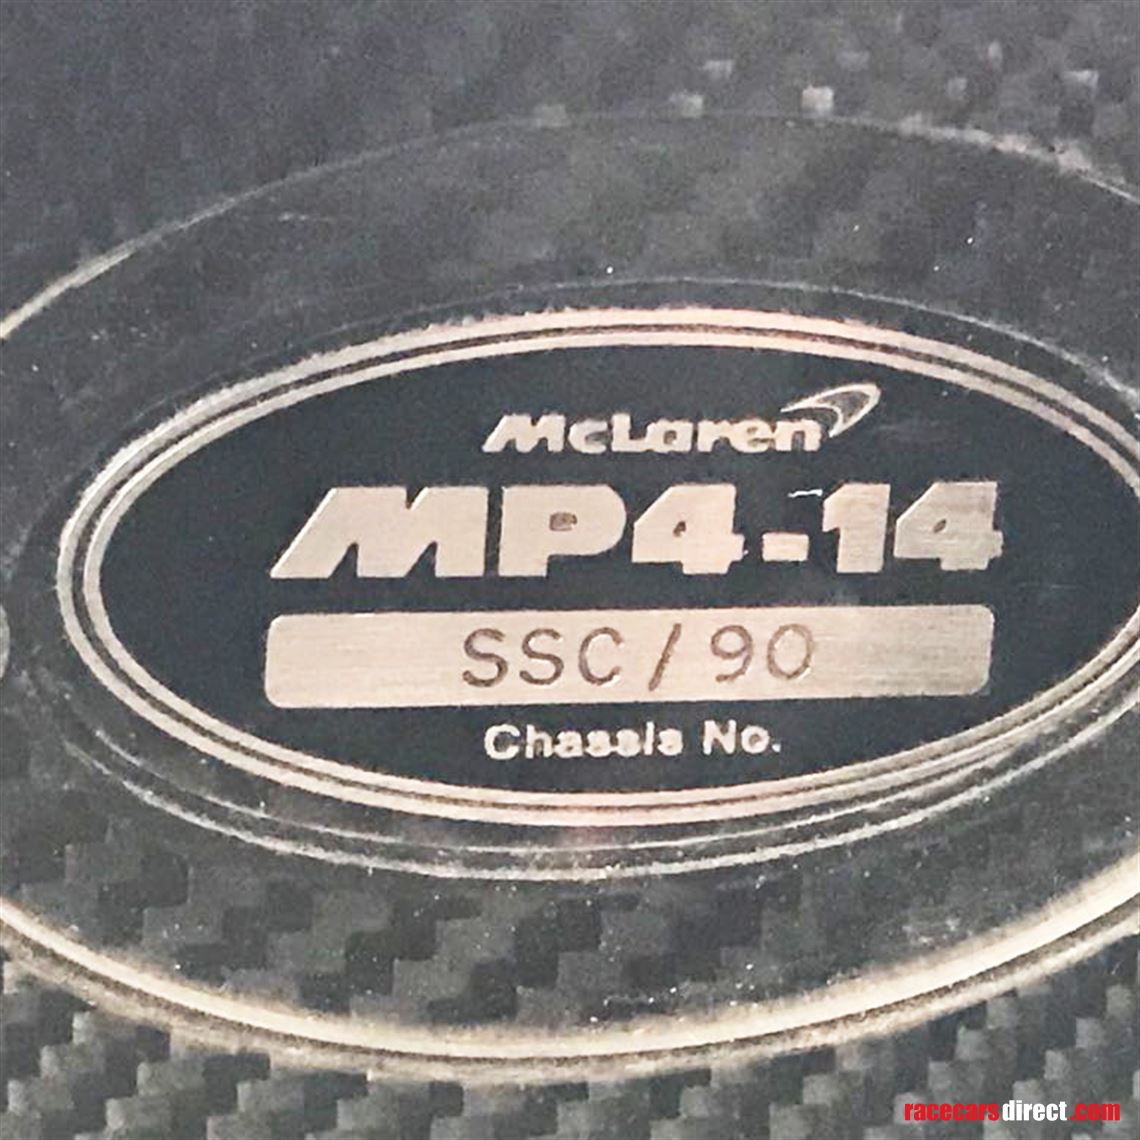 official-1999-mclaren-mp4-14-show-car